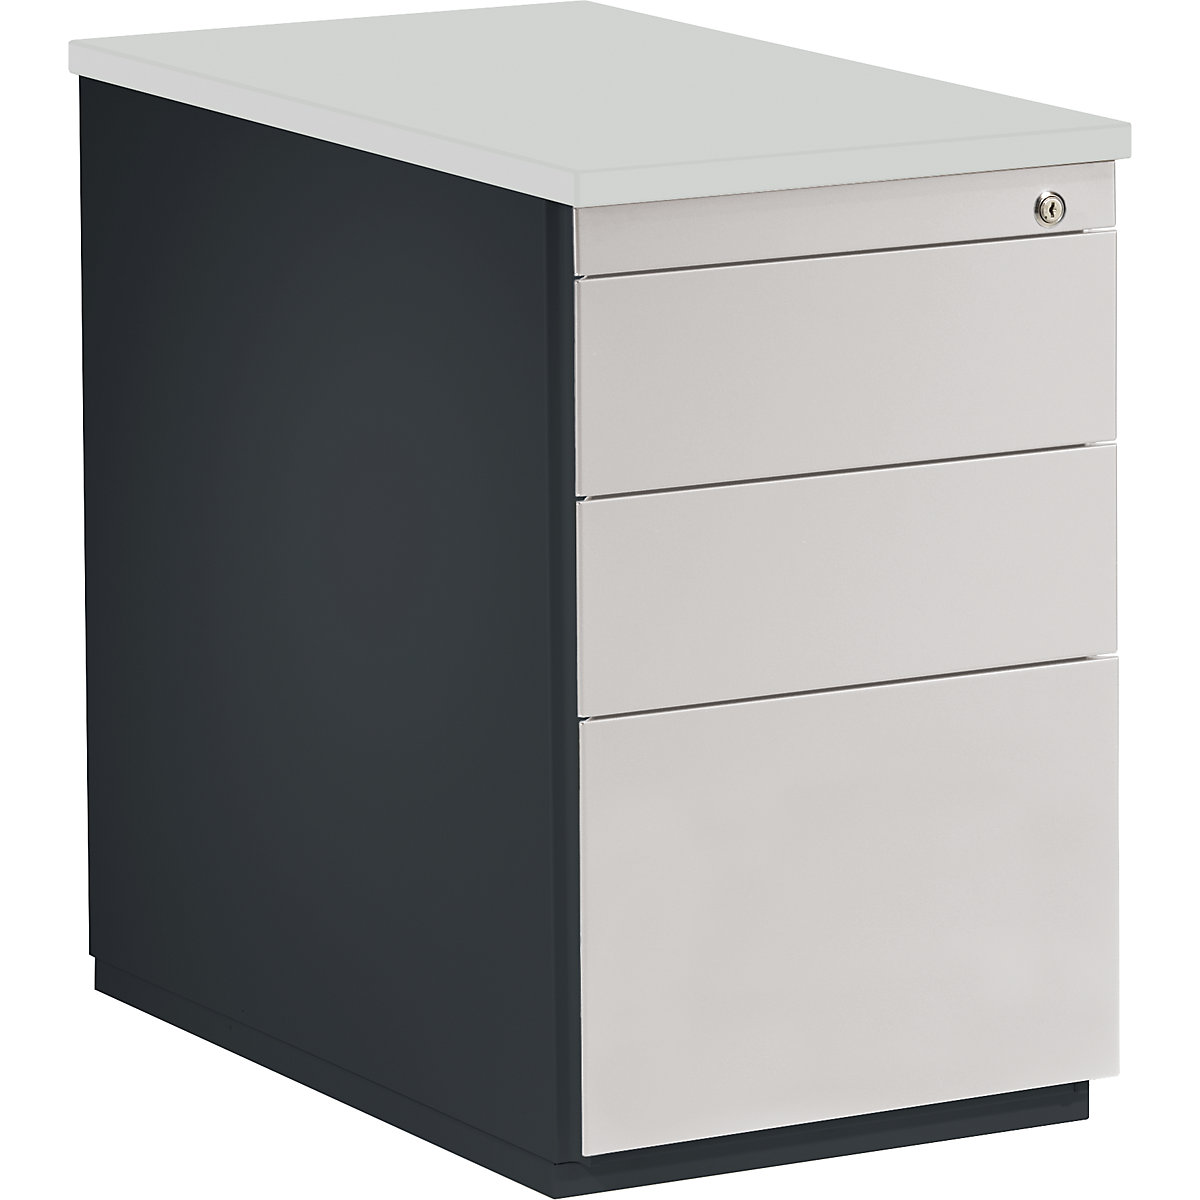 mauser – Casetieră cu sertare, î. x ad. 720 x 800 mm, 2 sertare pentru materiale, 1 registratură suspendată, gri antracit / gri deschis / gri deschis